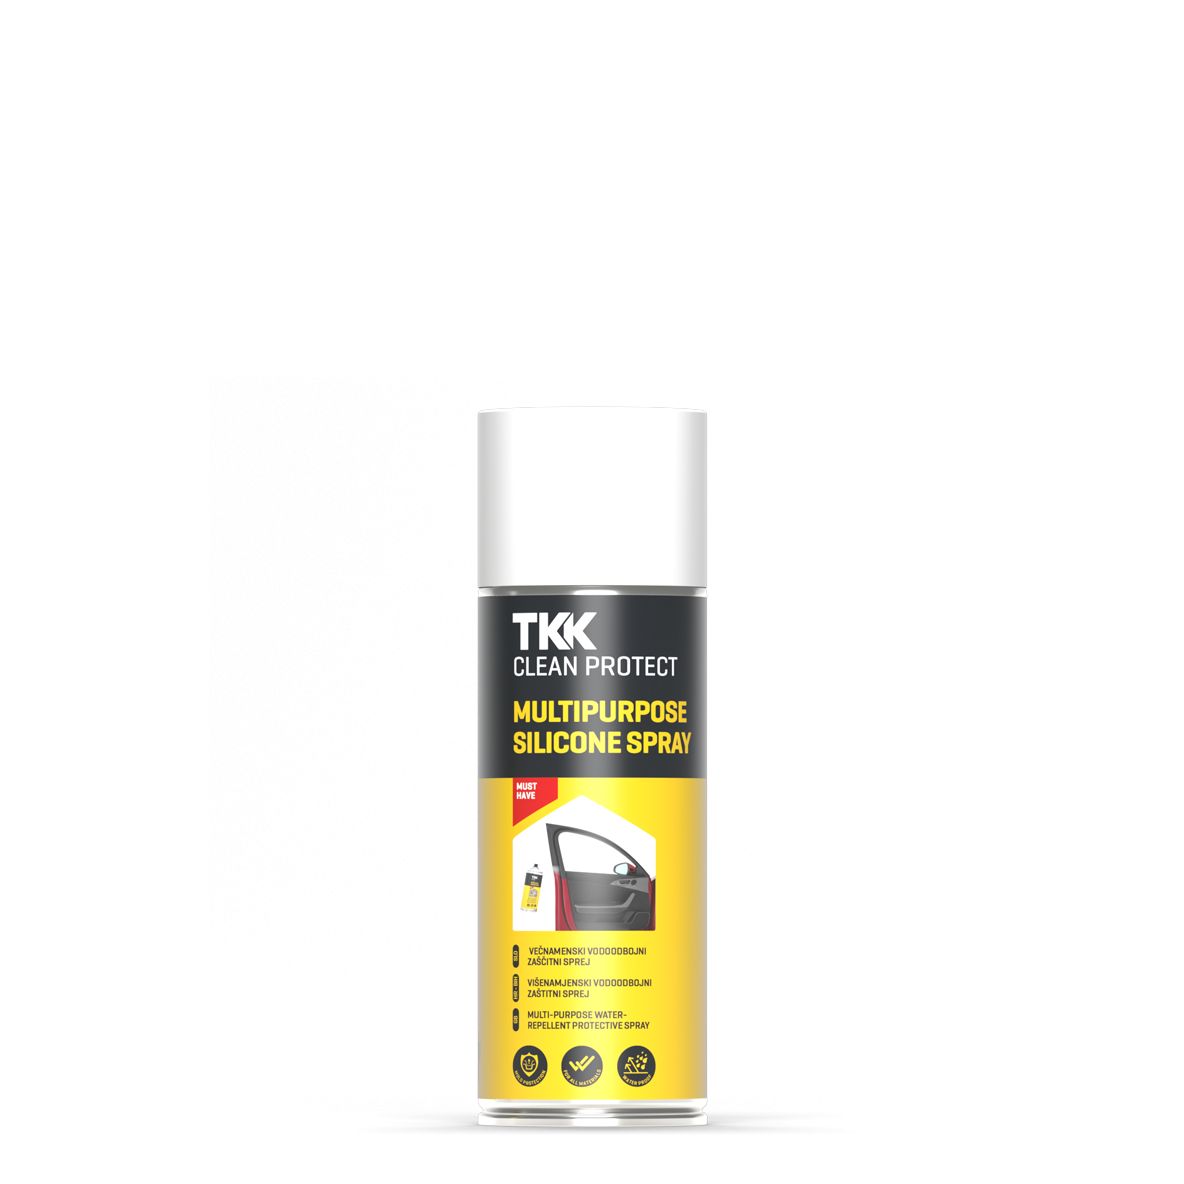 TKK Clean Protect Multipurpose Silicone Spray